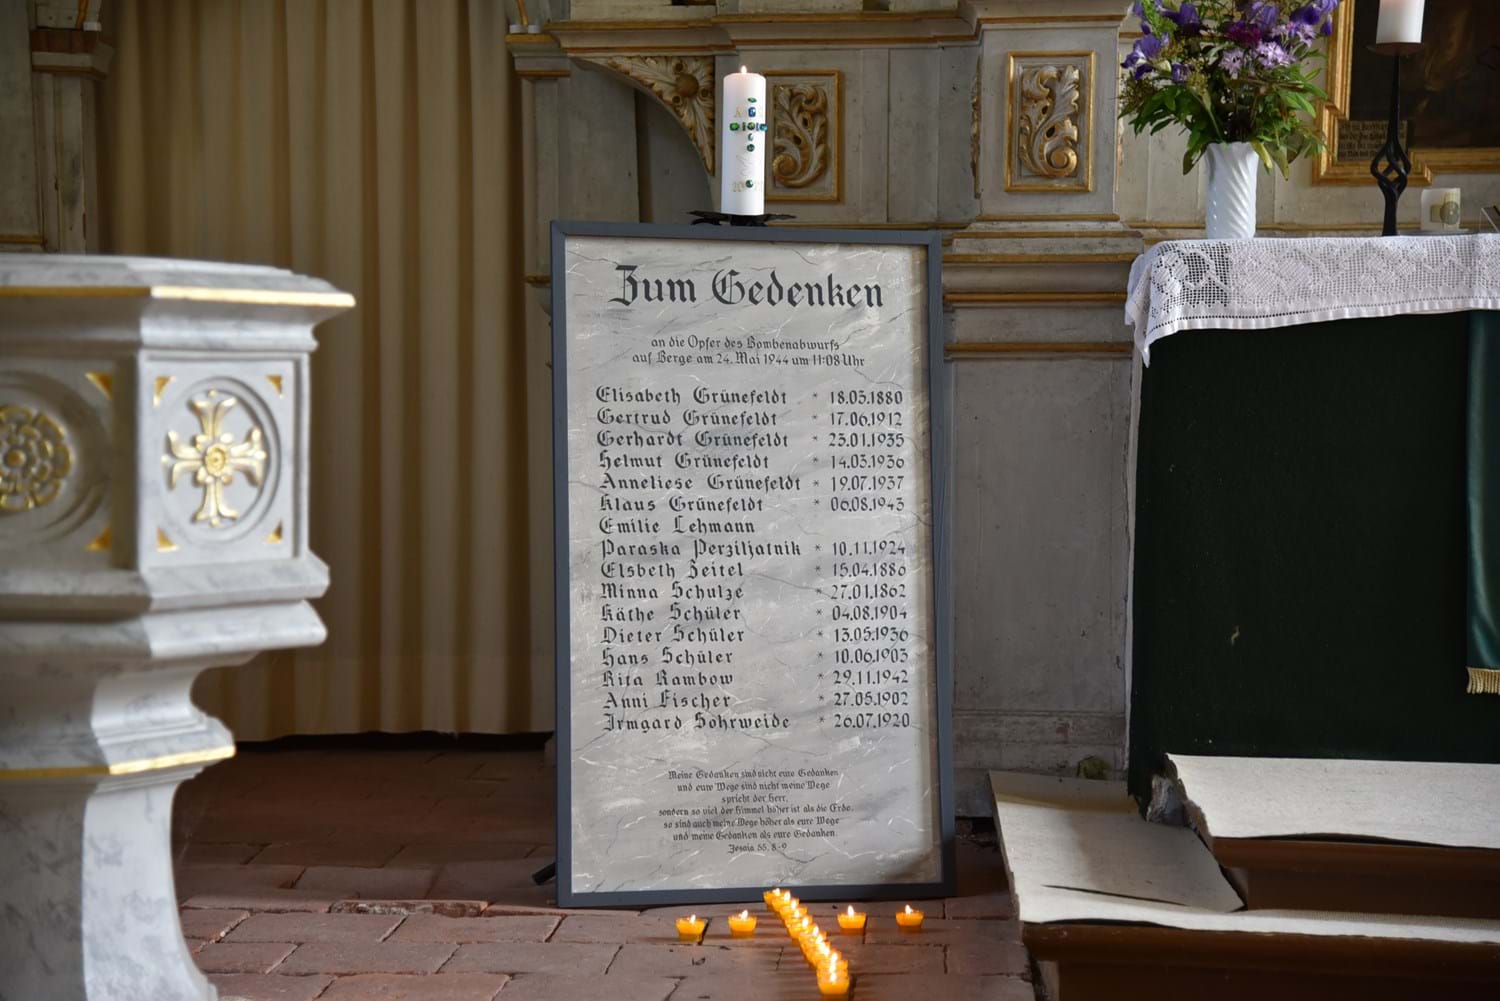 16 Kerzen erinnerten am Gedenktag an die 16 Opfer, die am 24. Mai 1944 bei der Bombardierung in Berge ums Leben kamen.